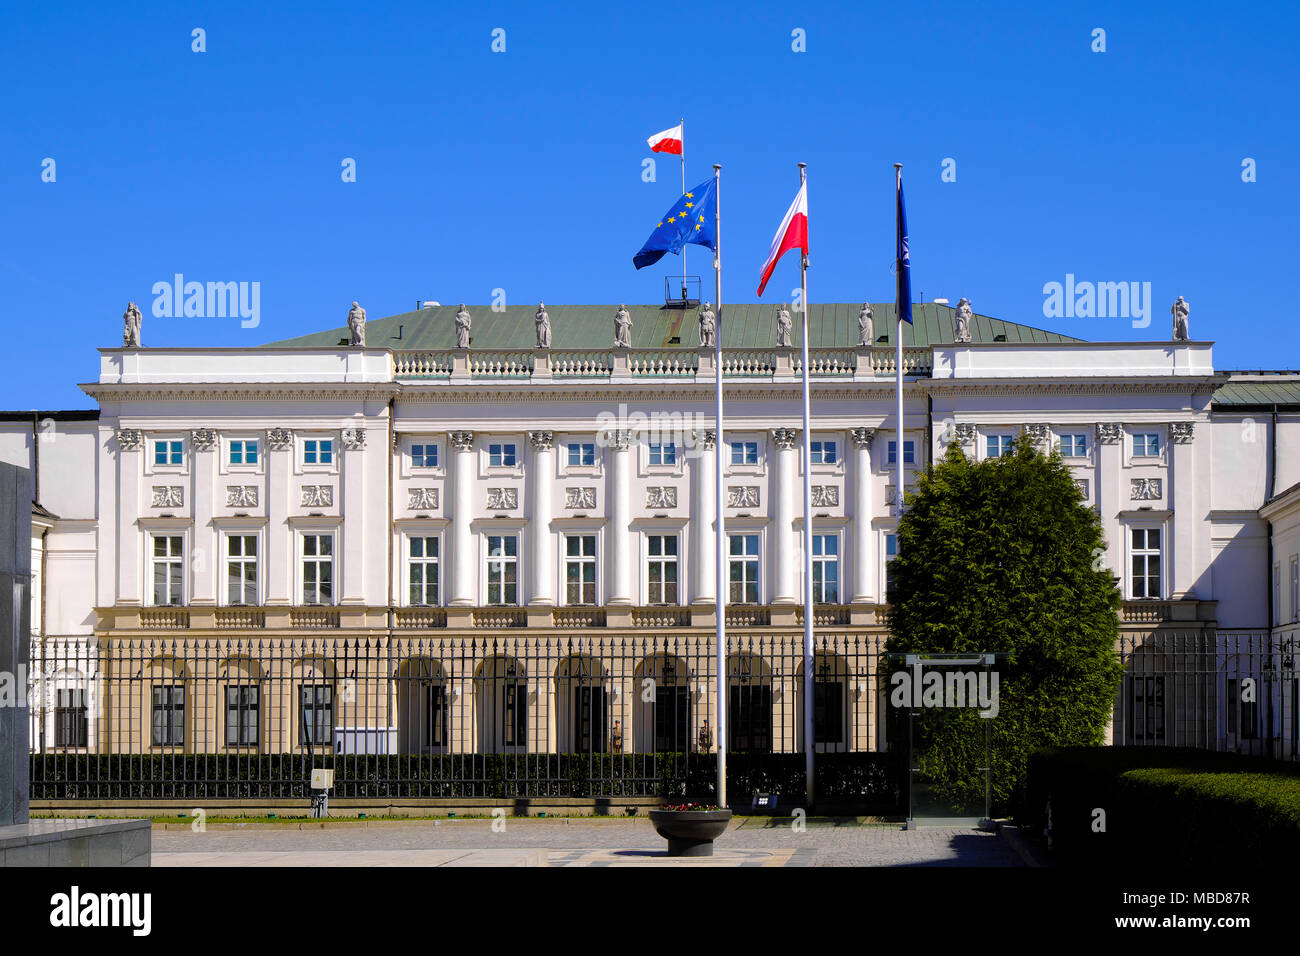 Varsovia, Polonia / Mazovia - 2018/04/07: Casco Histórico de la ciudad antigua de Varsovia - El presidente palacio en la calle Krakowskie Przedmiescie Foto de stock